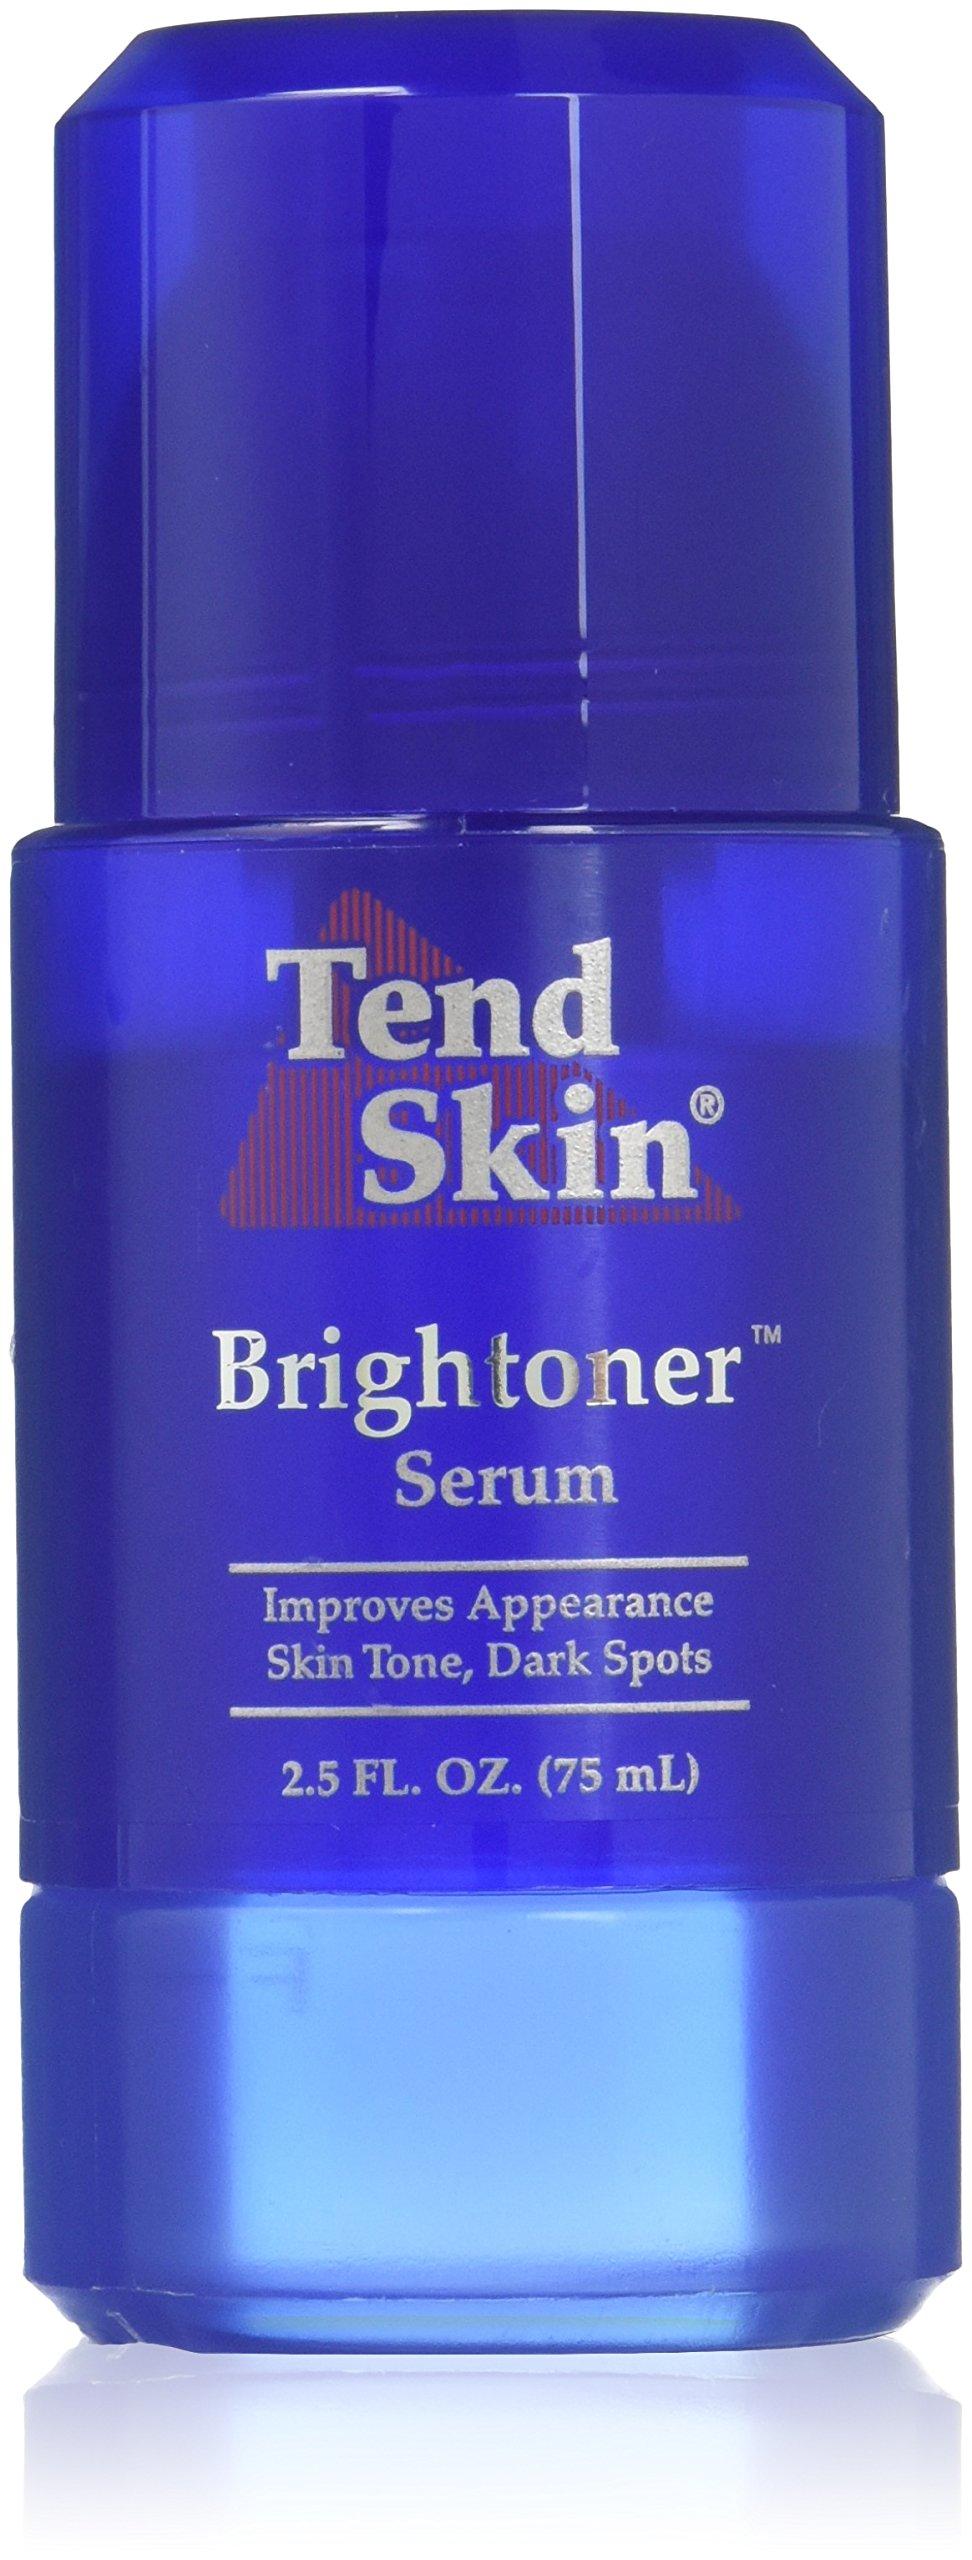 8-oz Tend Skin Liquid